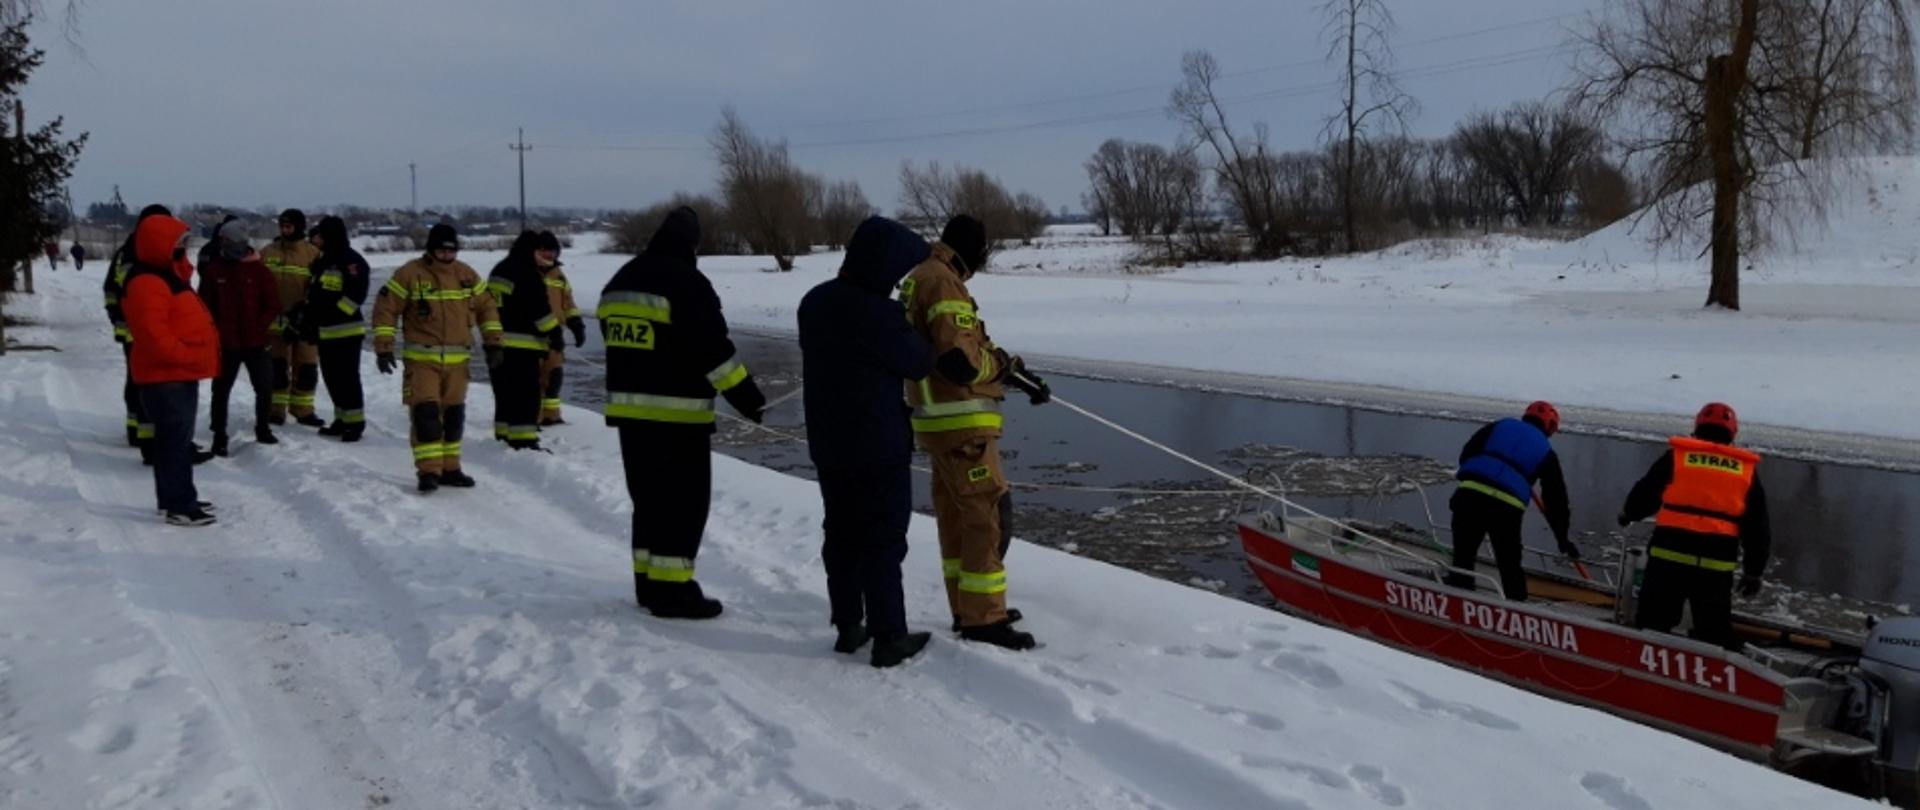 Dwóch strażaków ubranych w kamizelki ratunkowe na łodzi prowadzących działania poszukiwawcze na rzece Nurzec. Na brzegu pozostali strażacy biorący udział w akcji.